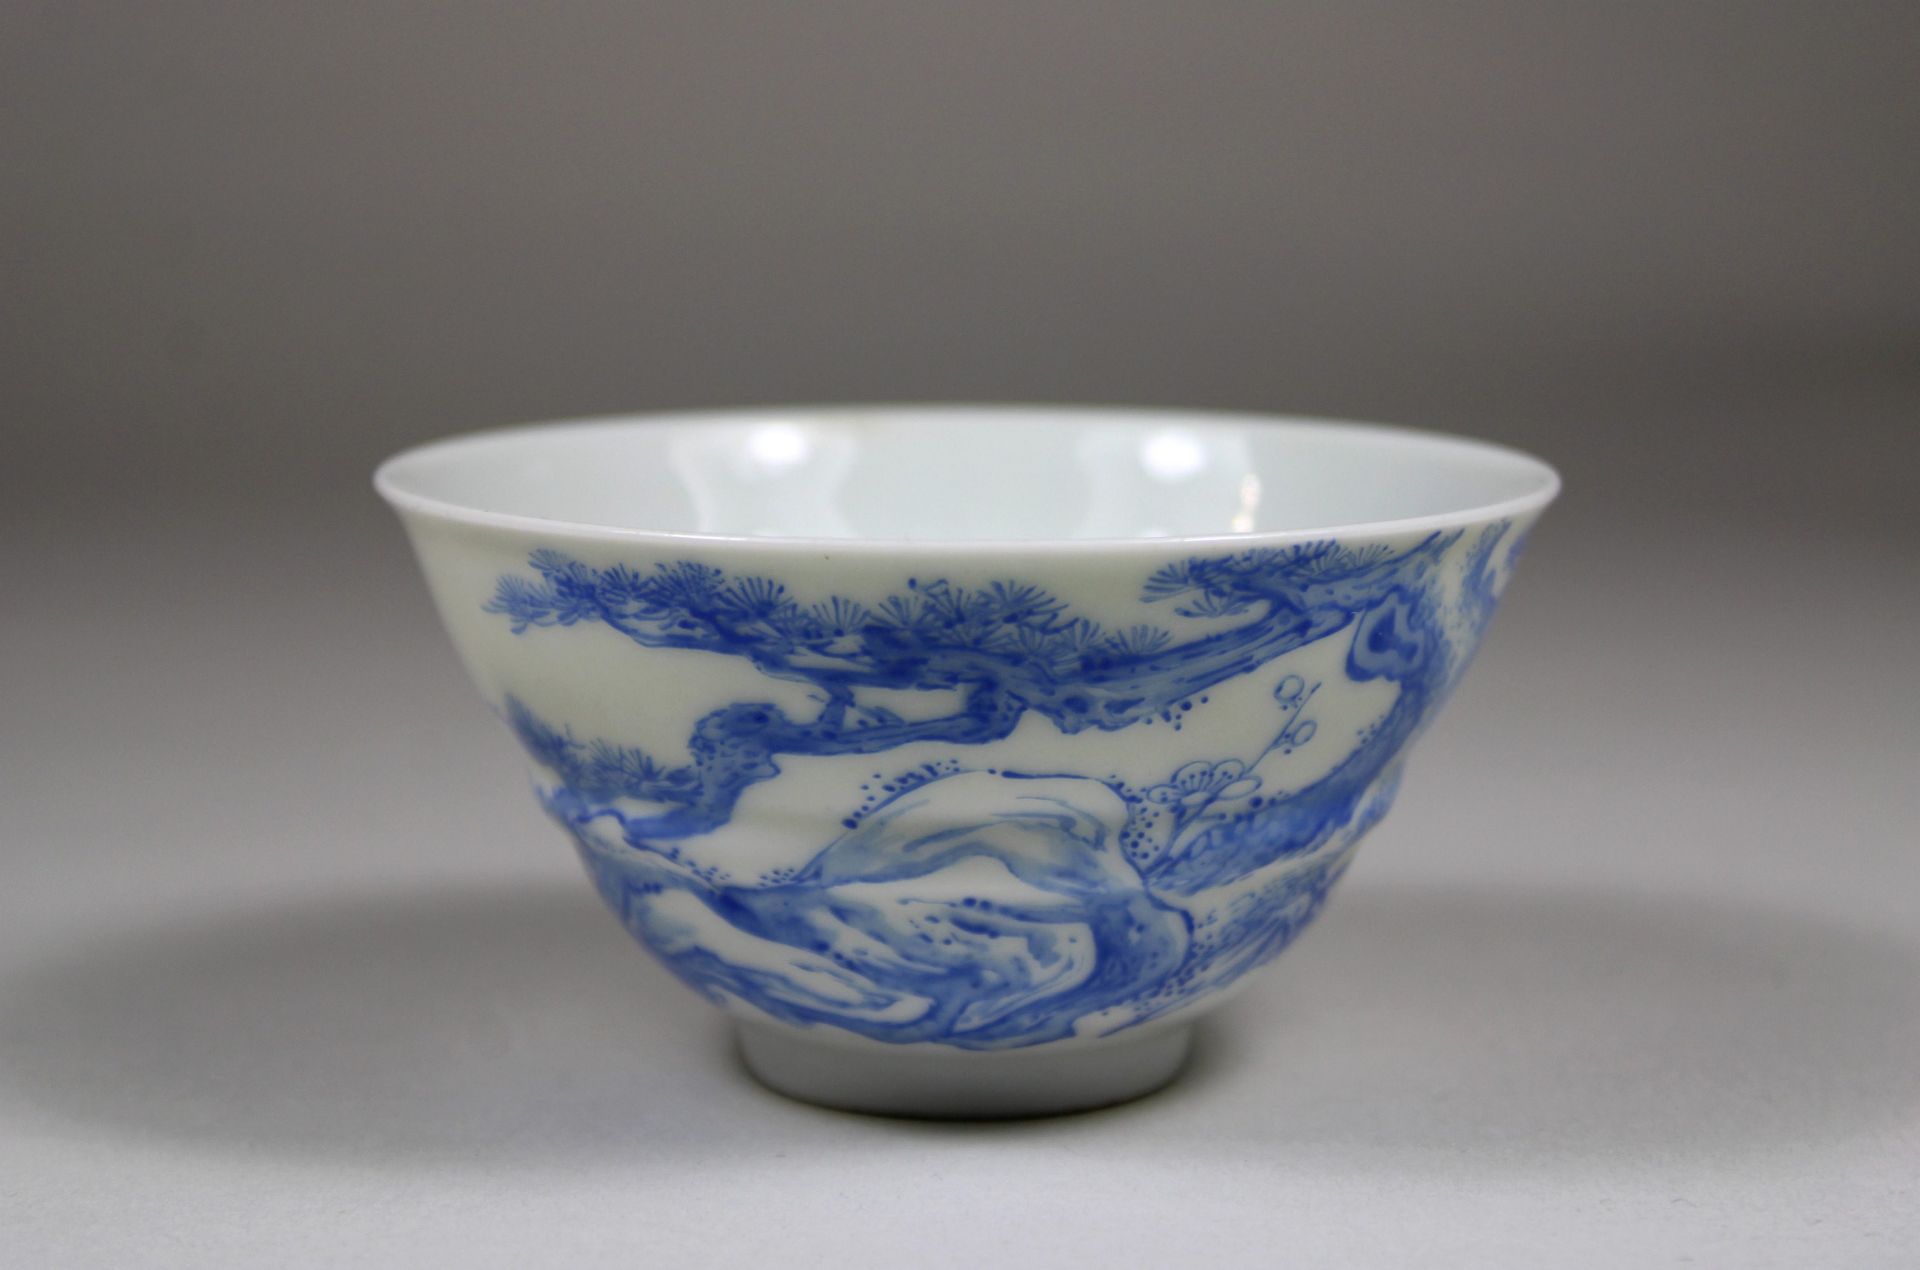 Chinesischer Cup, florale Dekoration, Blau -Weiß, Oberglasseur, feines Porzellan, Dm 9 cm, guter - Image 5 of 5